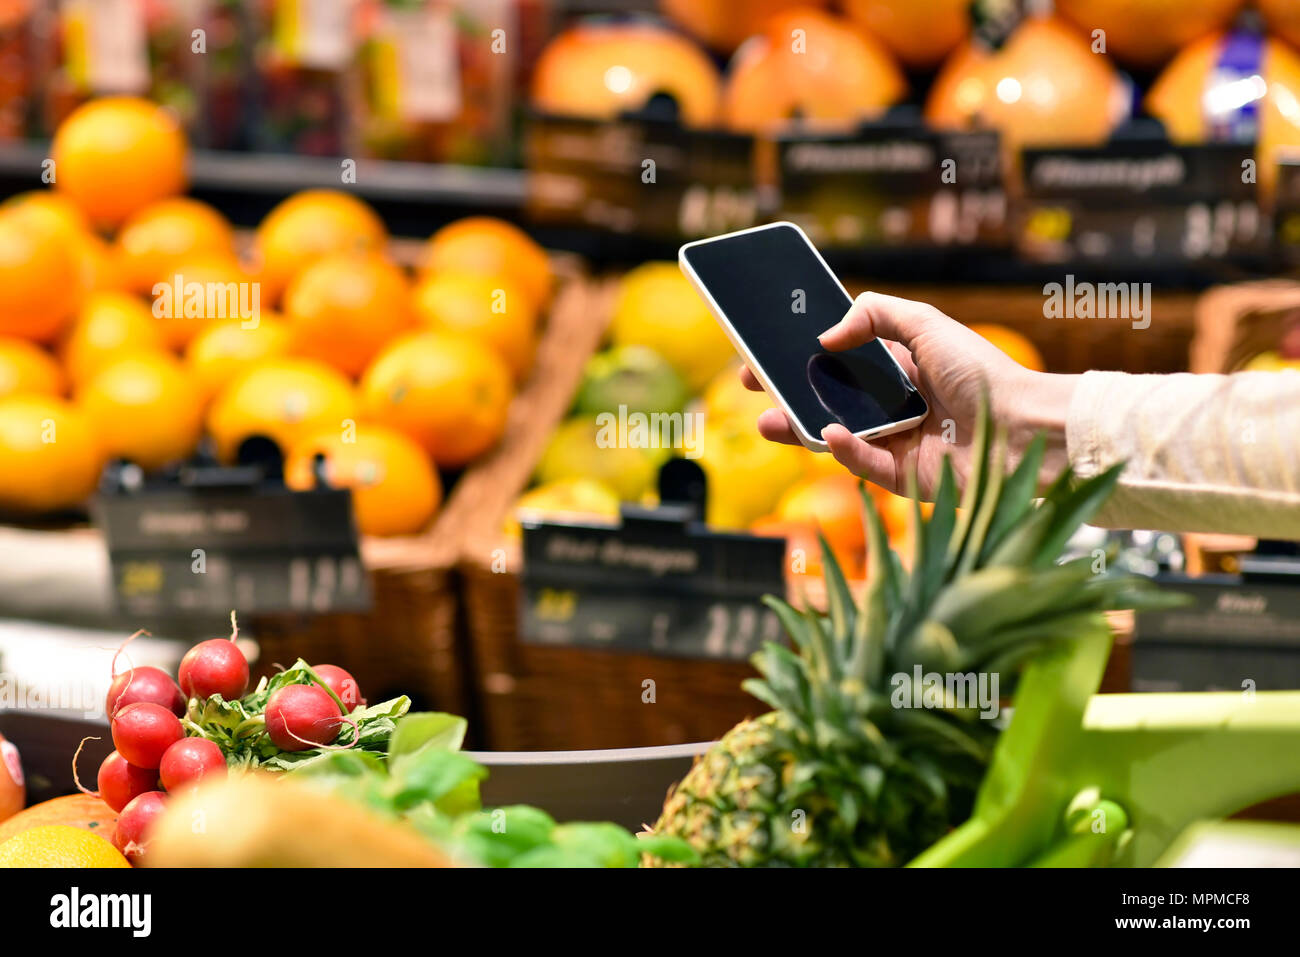 Einkauf im Supermarkt mit Smartphone - Preisvergleich und Informationen - - Kauf von frischem Obst und Gemüse Stockfoto